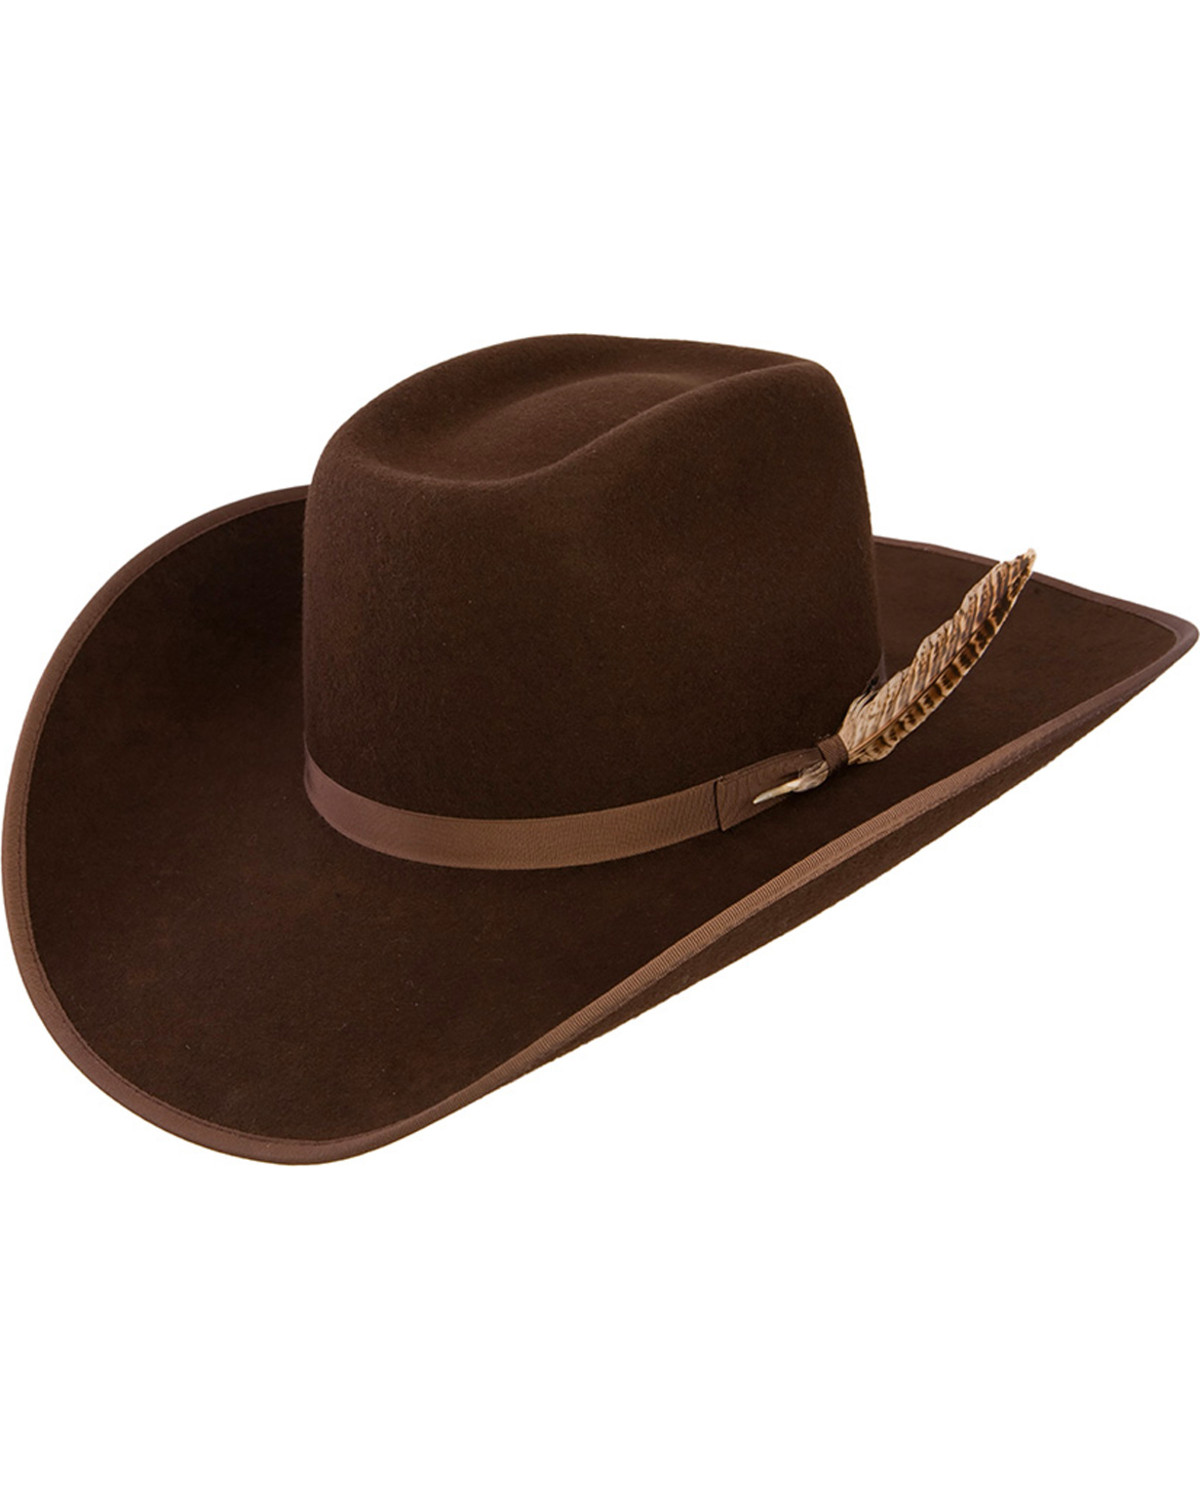 Resistol Kids' Holt Jr. Felt Cowboy Hat